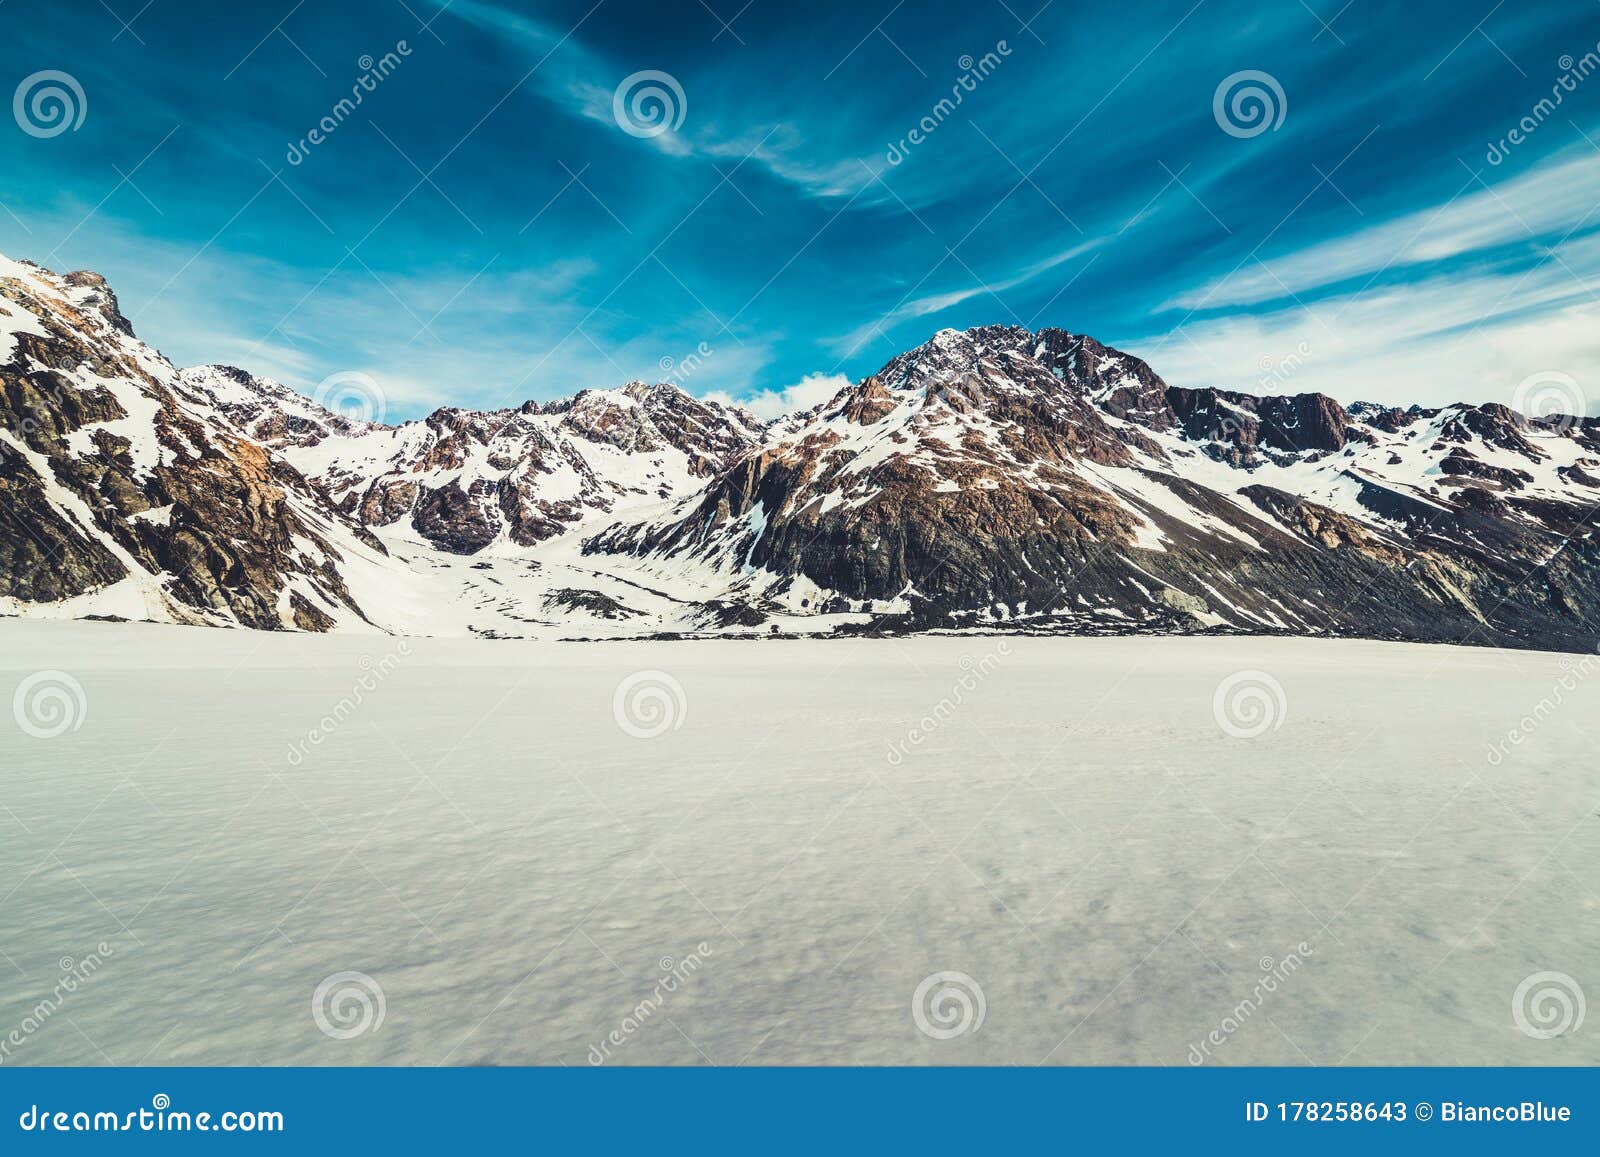 雪山背景的冬季景观库存图片 图片包括有雪山背景的冬季景观